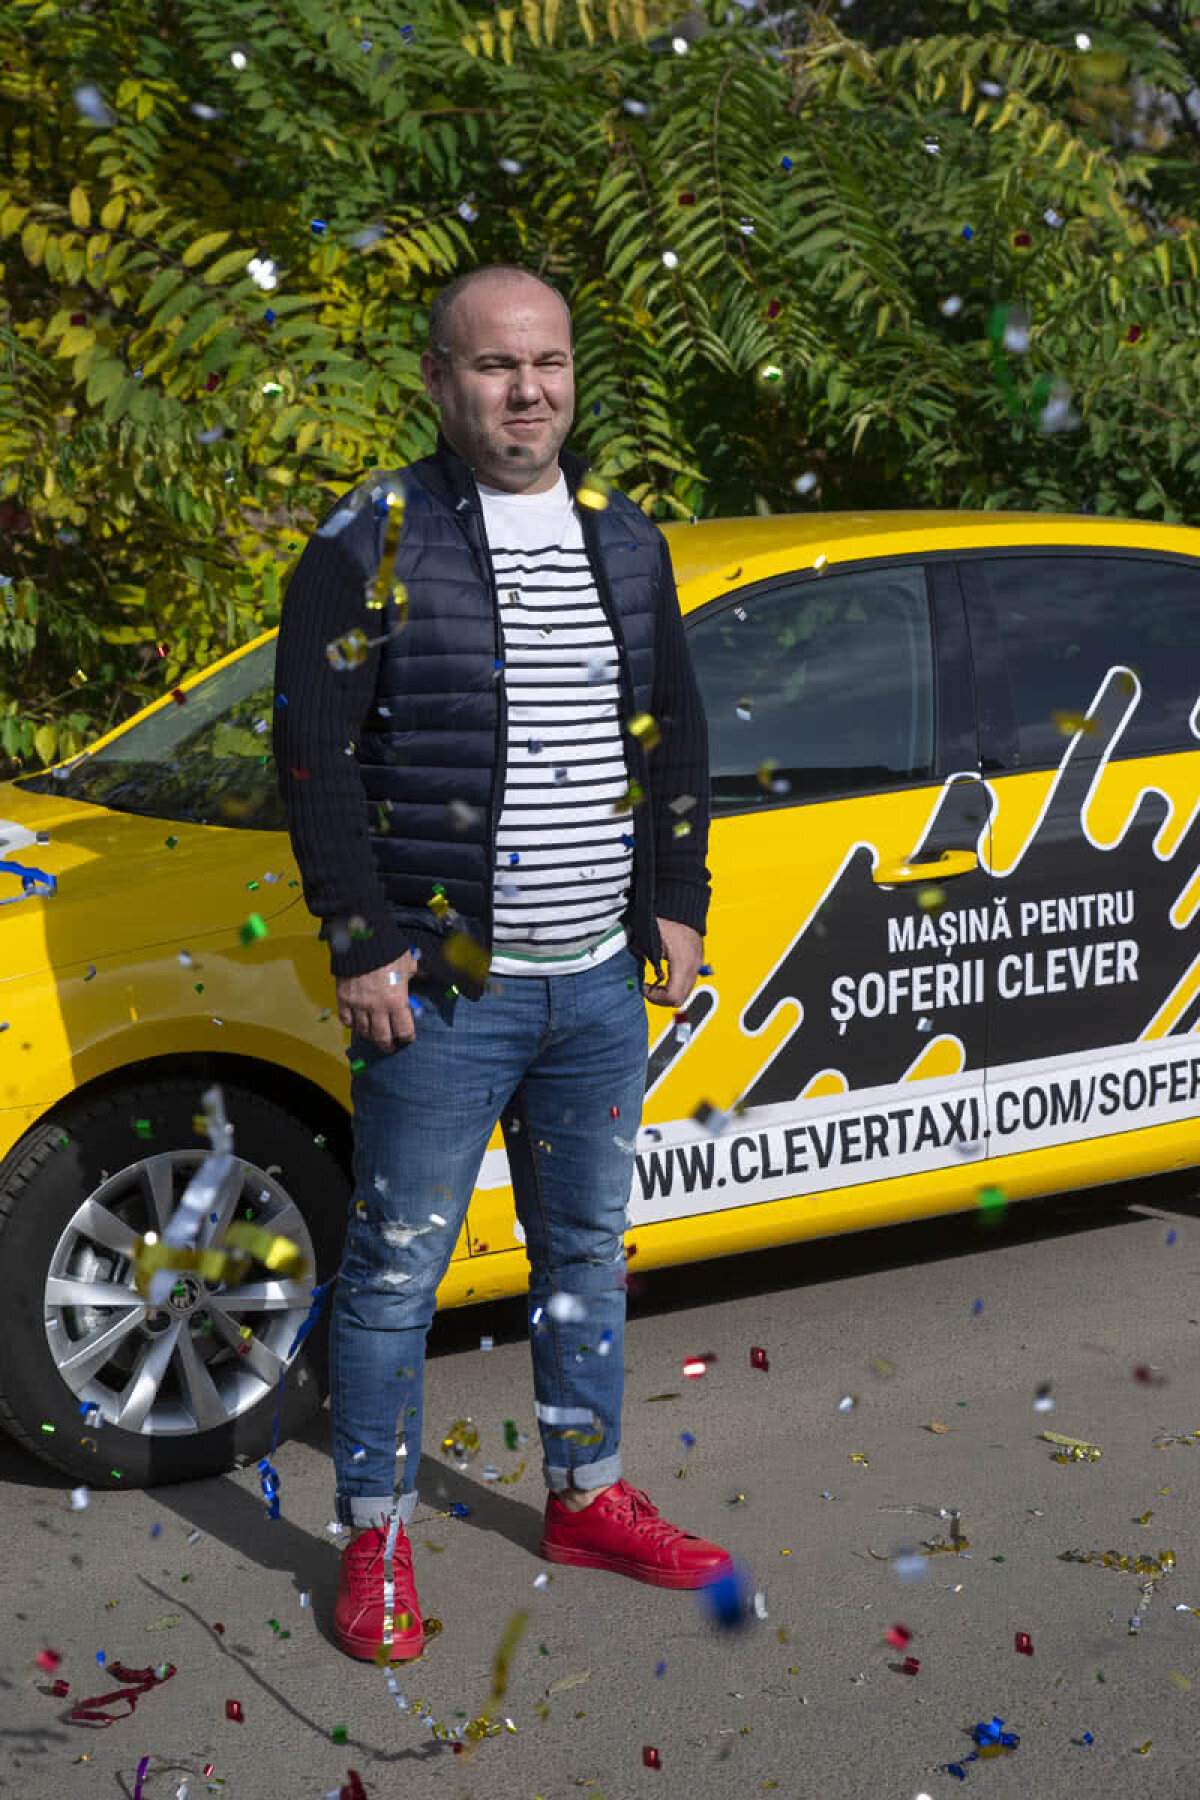 Află care este cel mai norocos șofer de taxi din România!  Citeşte întreaga ştire: (P) Află care este cel mai norocos șofer de taxi din România!